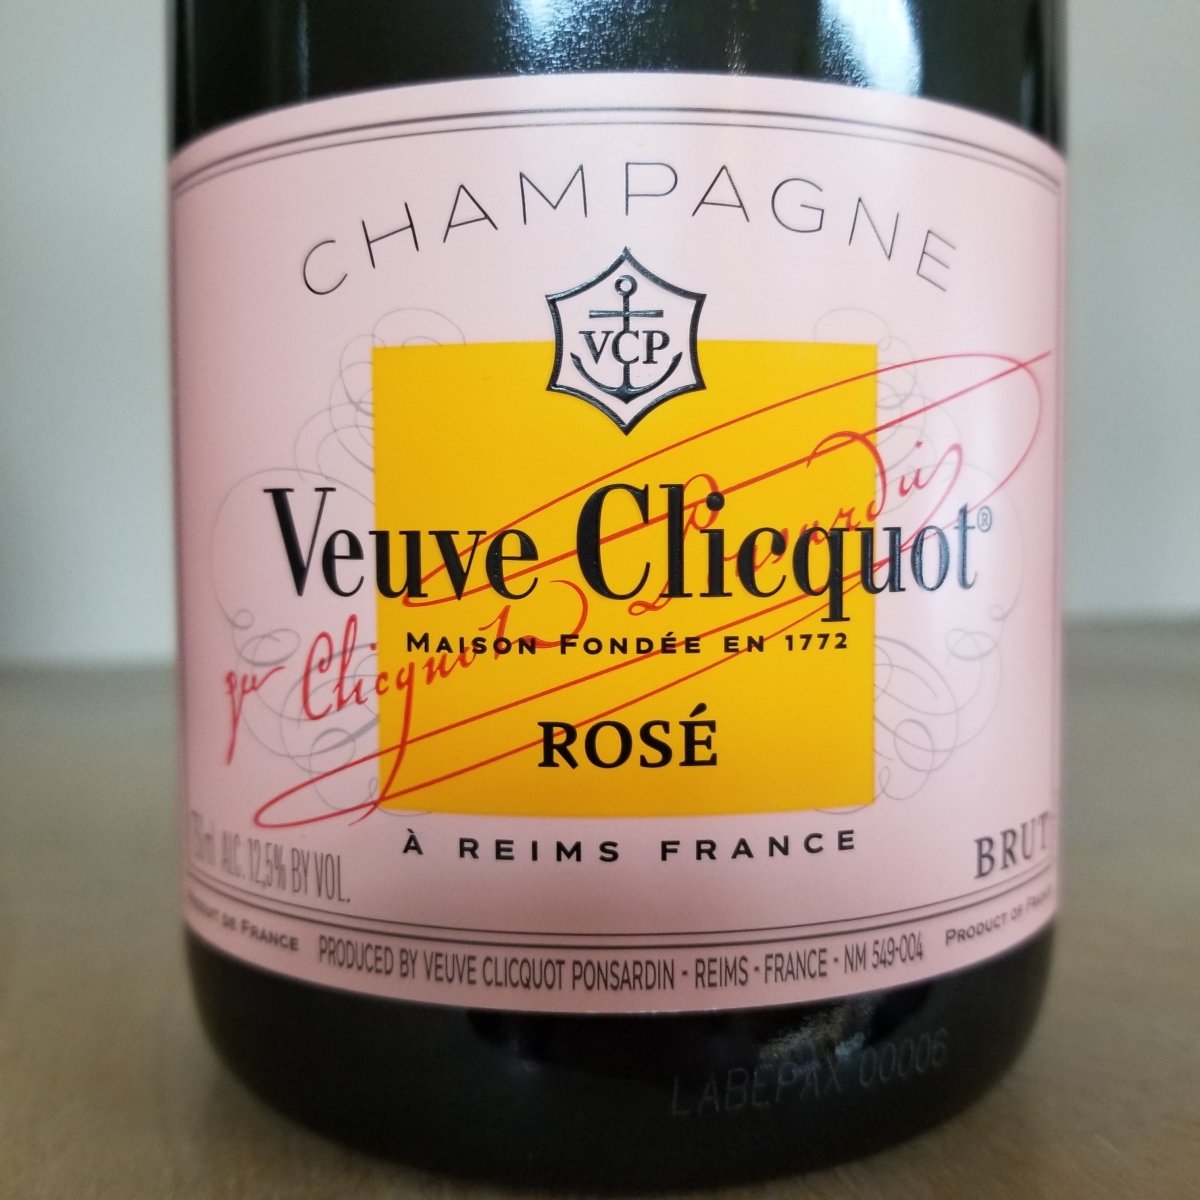 Veuve Clicquot Yellow Label Champagne, 750 ml